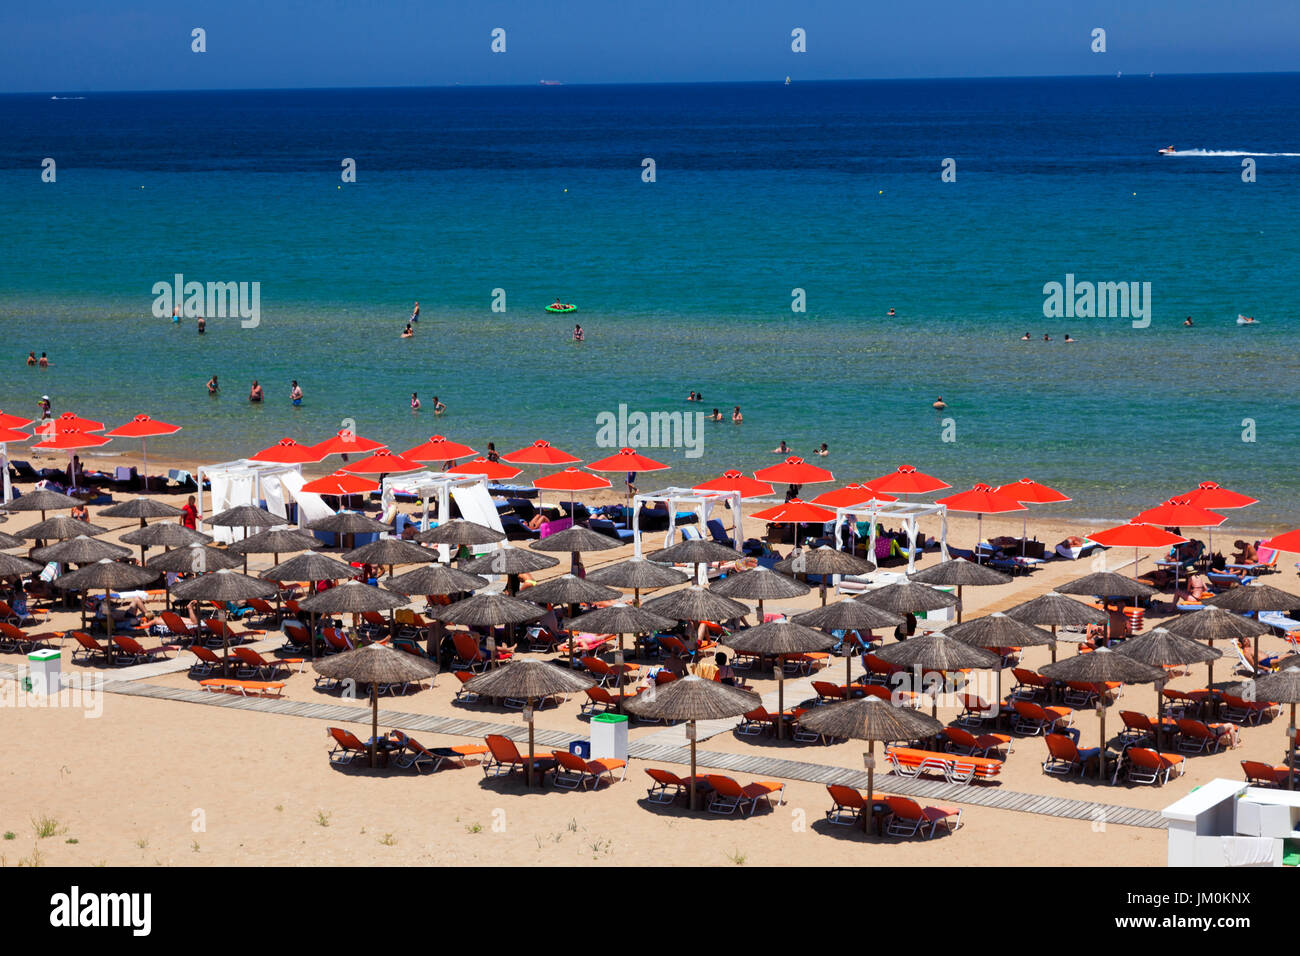 Partie de plage de Banana, l'île de Zakynthos, Grèce Banque D'Images